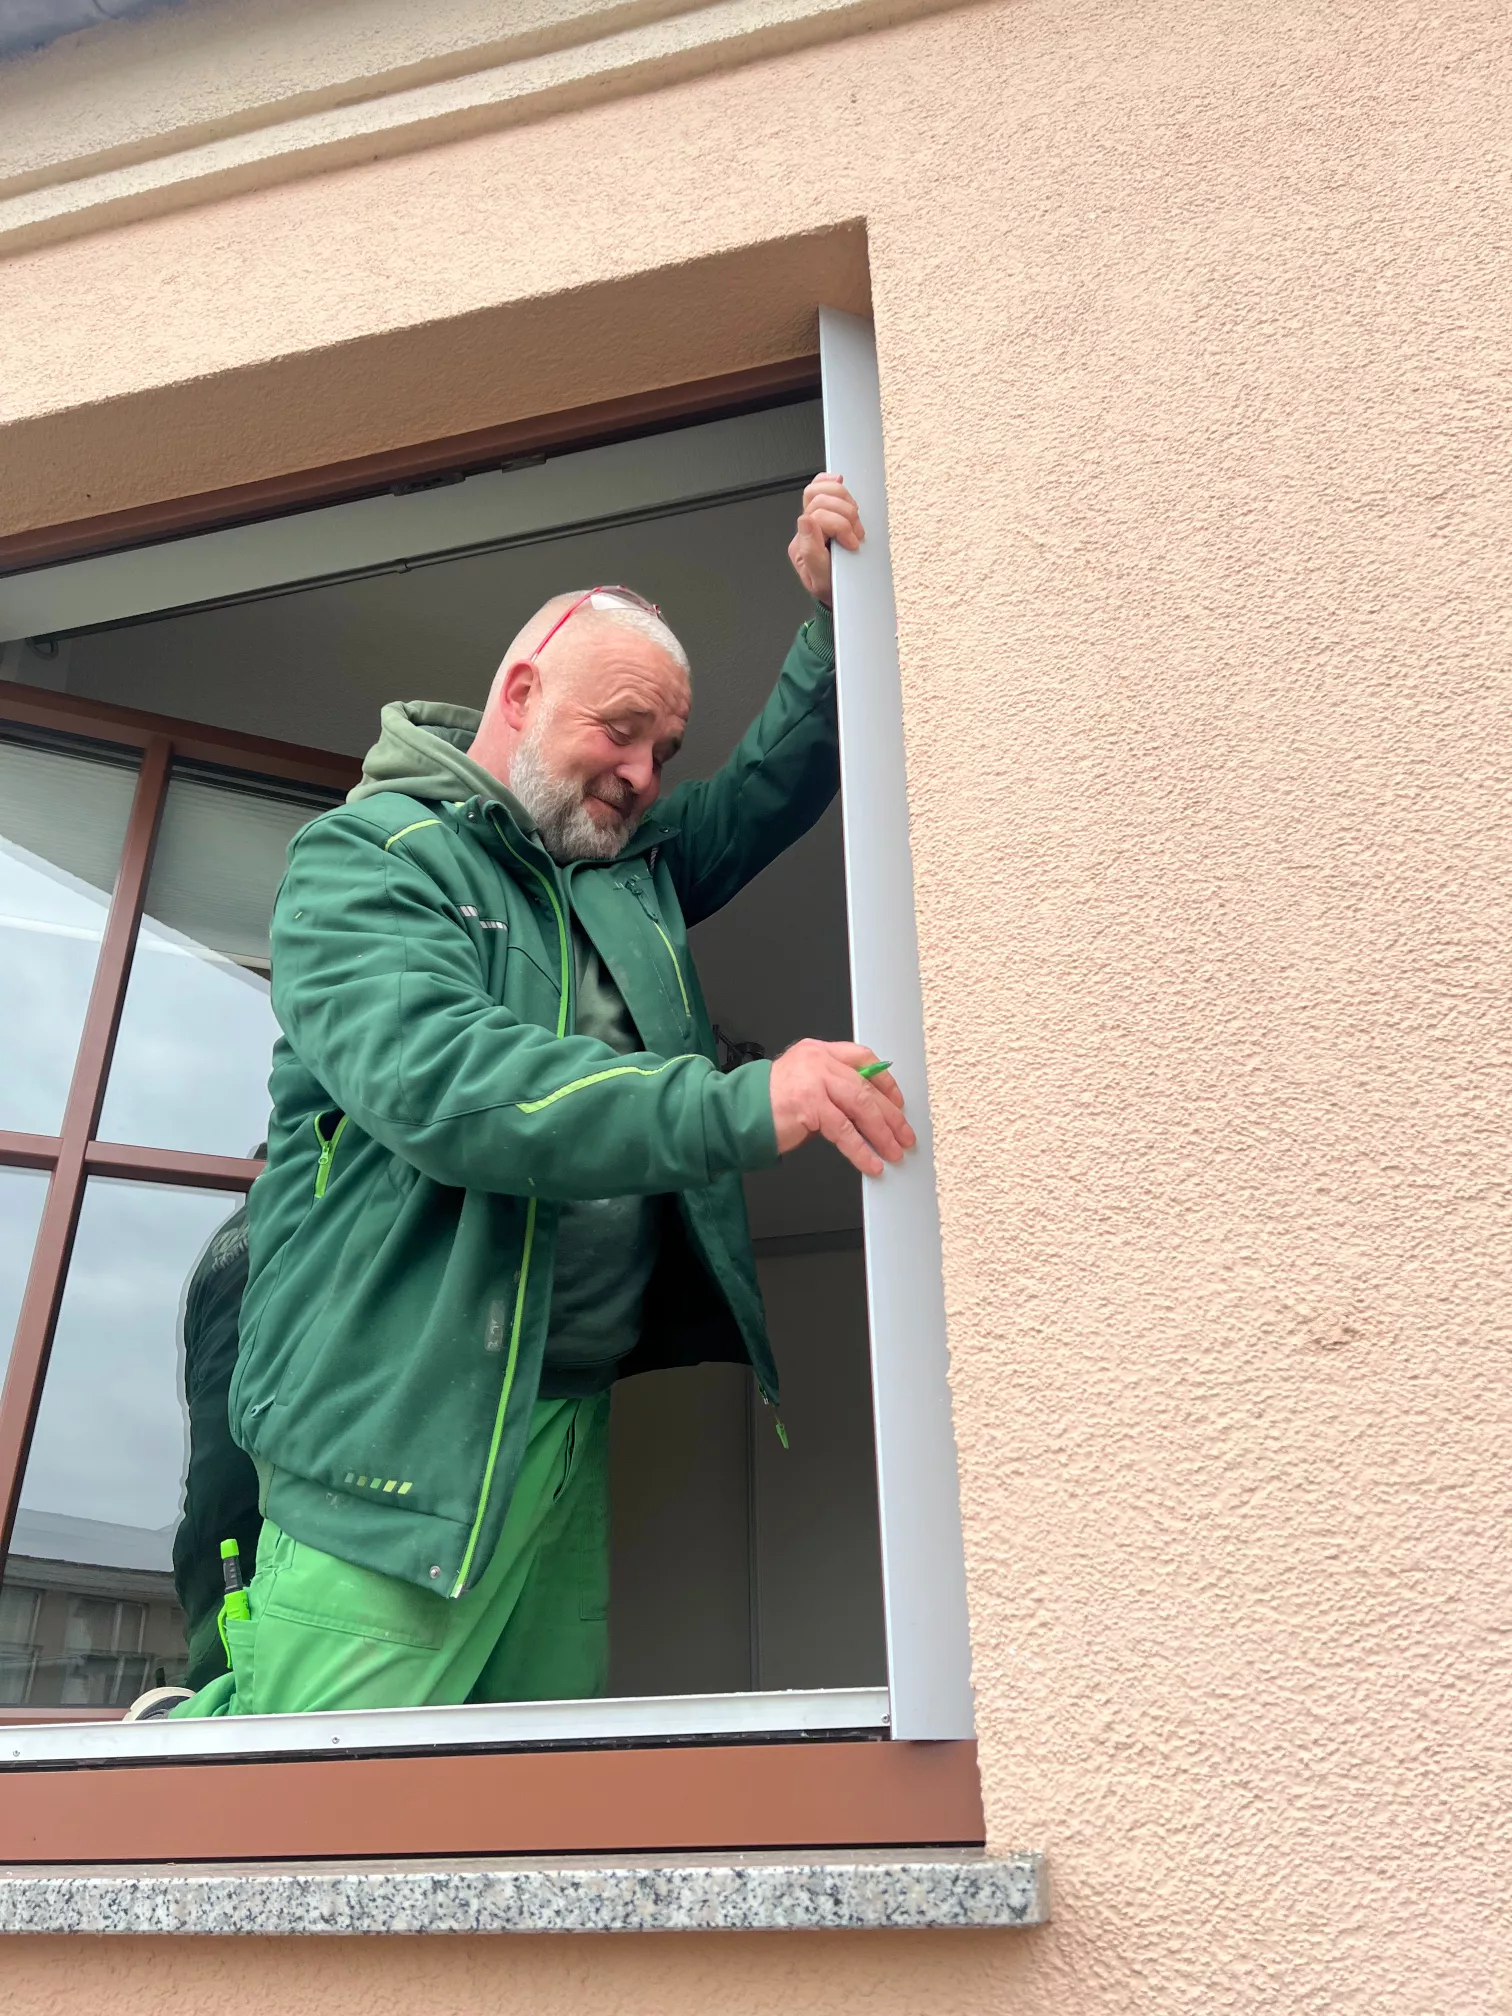 Fensterrenovierung mit Jan Heinrich dem Renovierungsexperten